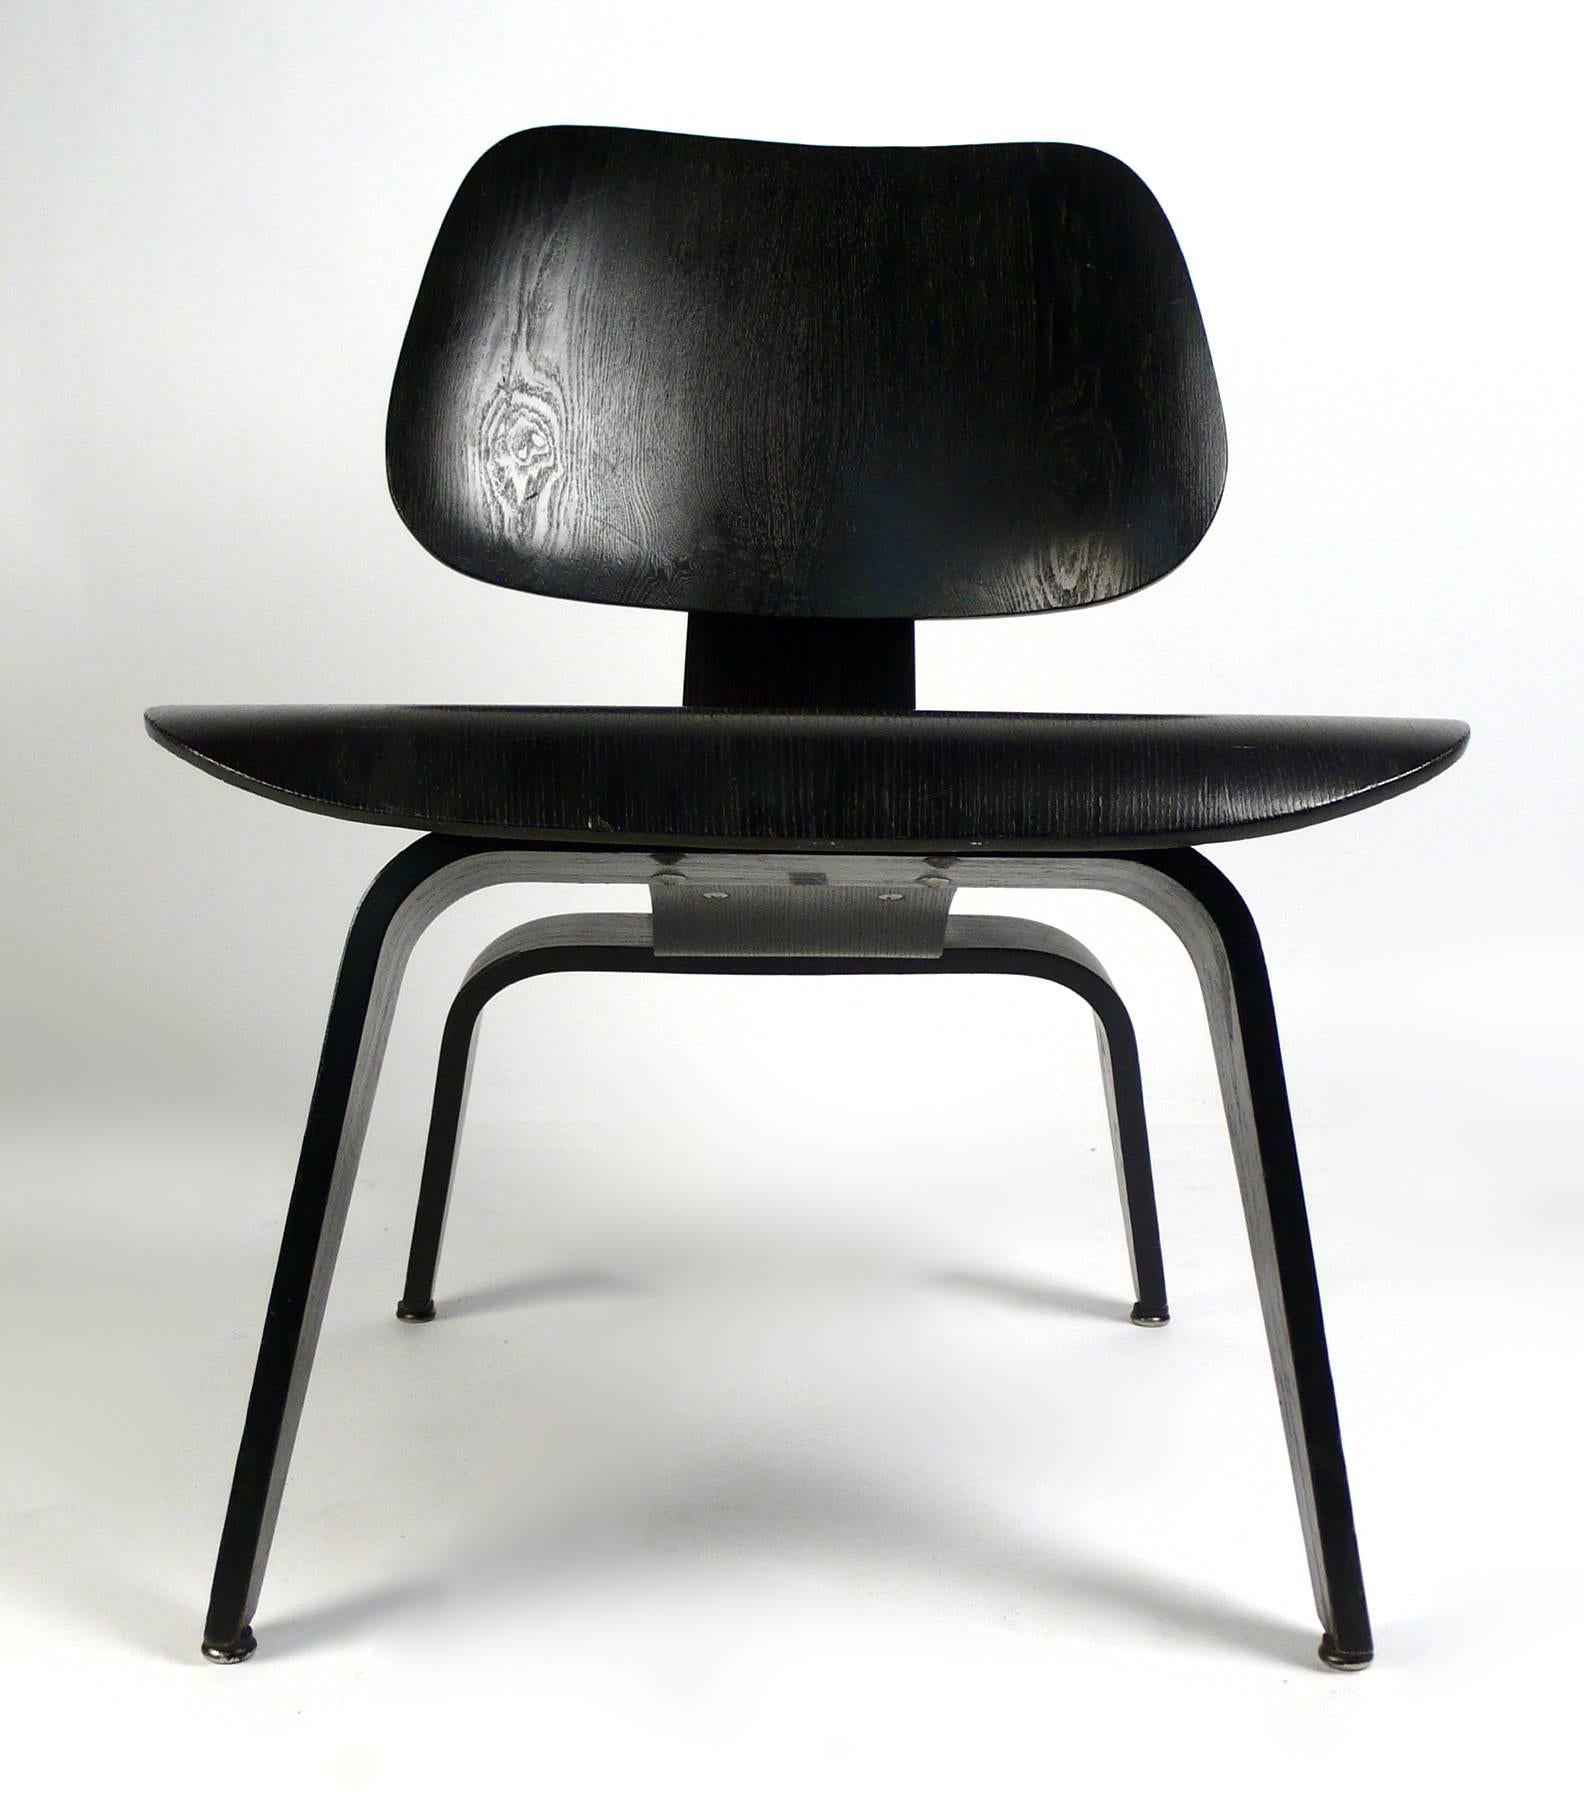 Early Production LCW conçu par Charles Eames et fabriqué par Herman Miller - 1955. La chaise est en très bon état d'origine avec la teinture analine noire d'origine. 